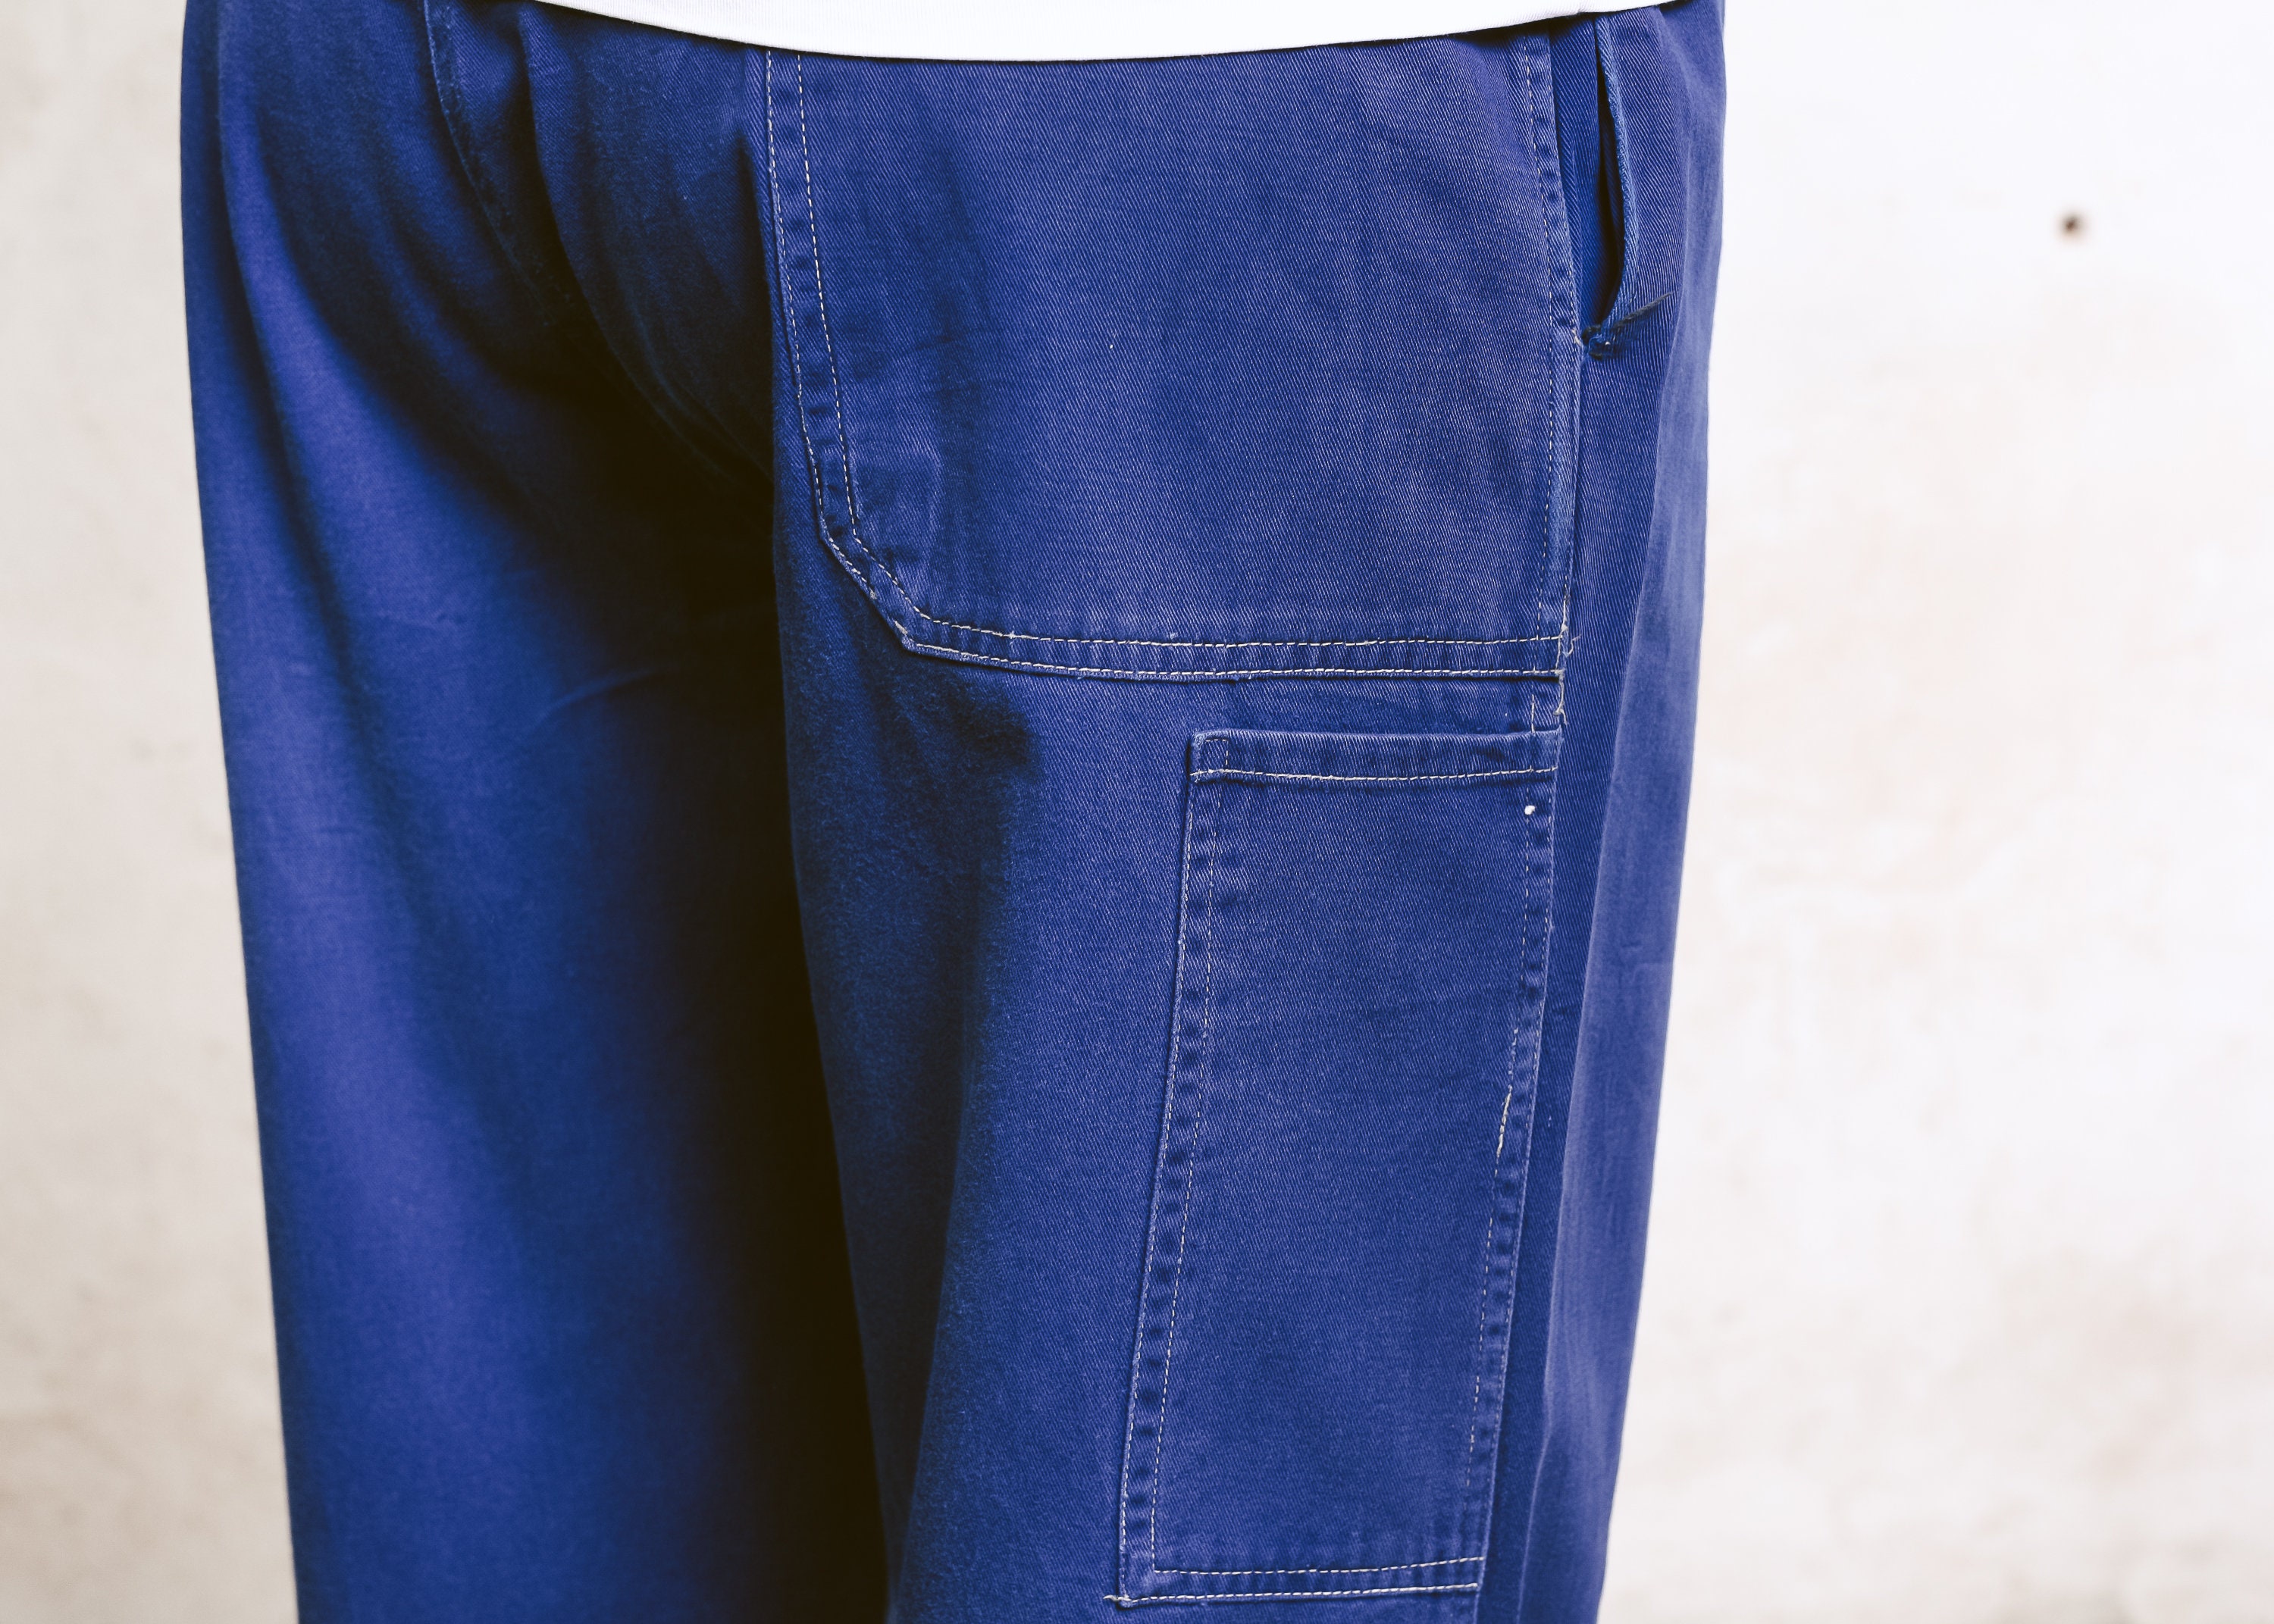 Vintage Utility Pants . Navy Blue Men Ankle Pants Cotton Trousers Chore ...